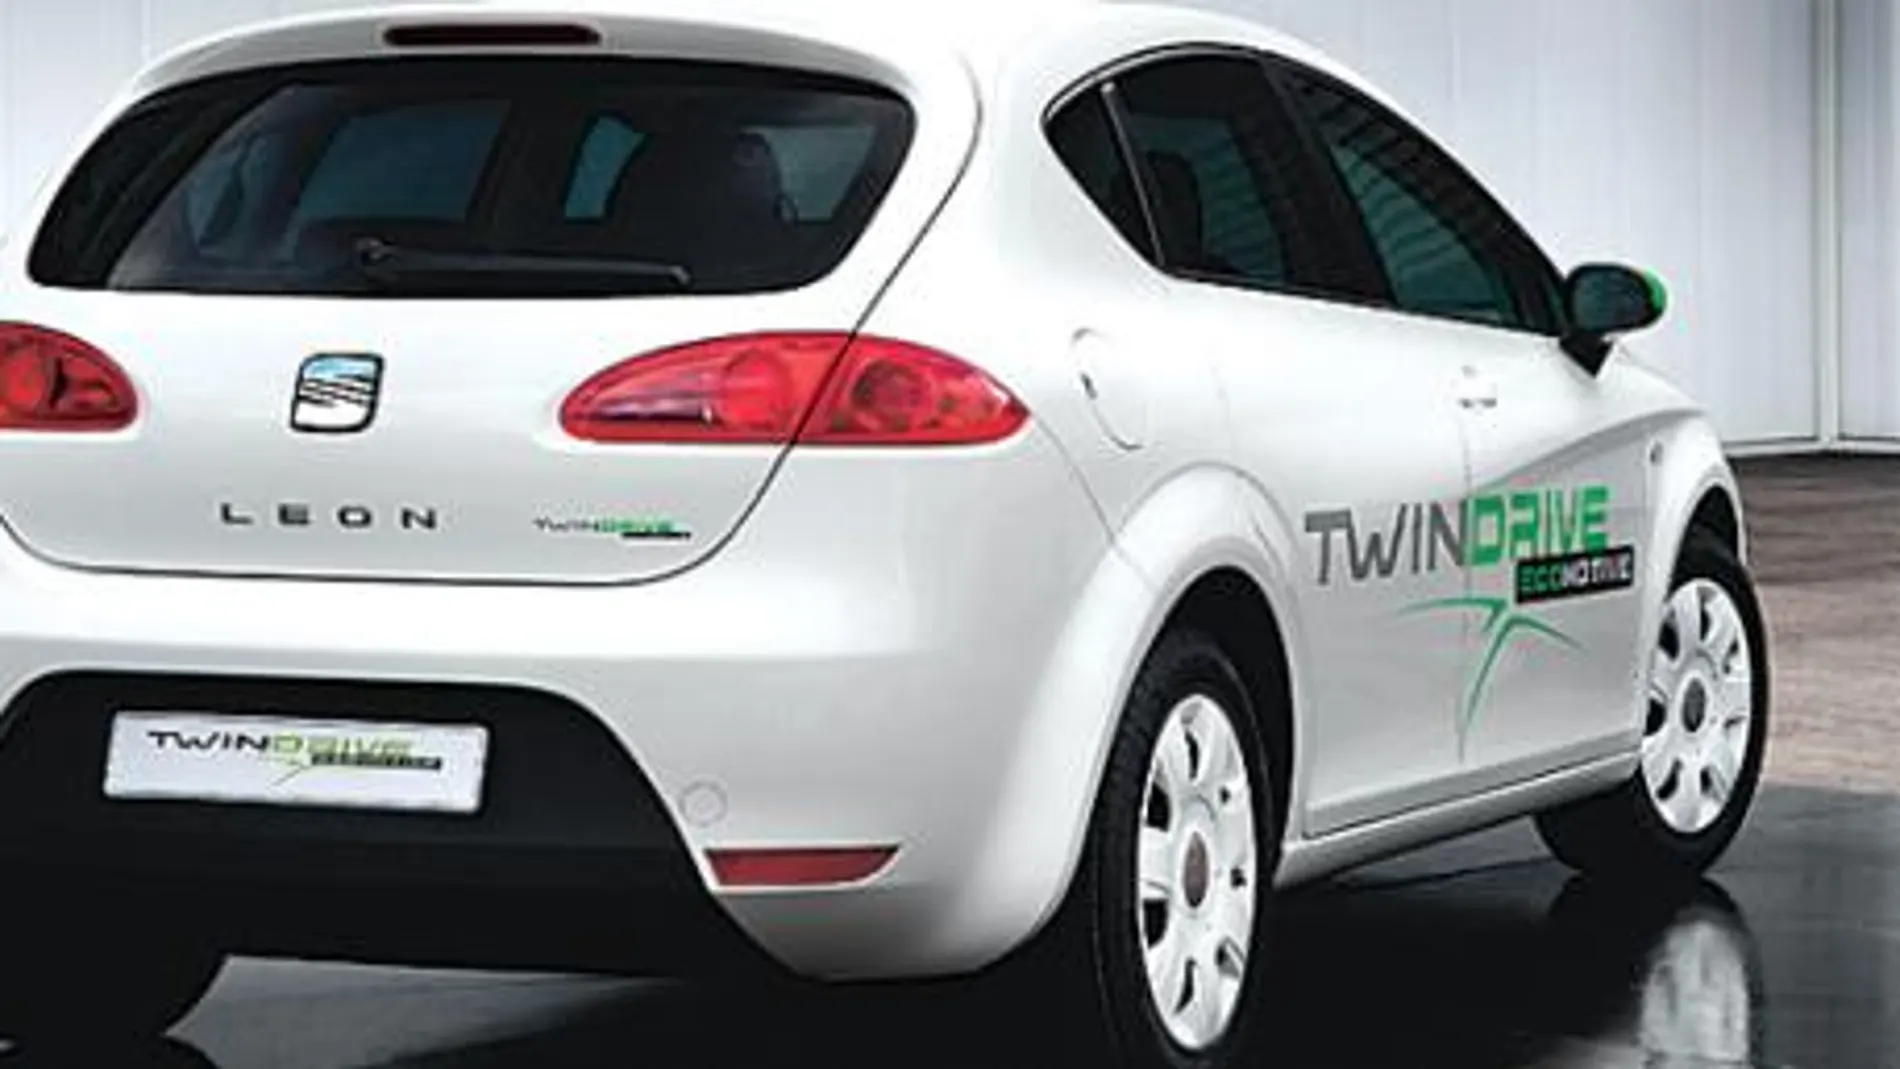 León TwinDrive Ecomotive el primer prototipo híbrido de Seat